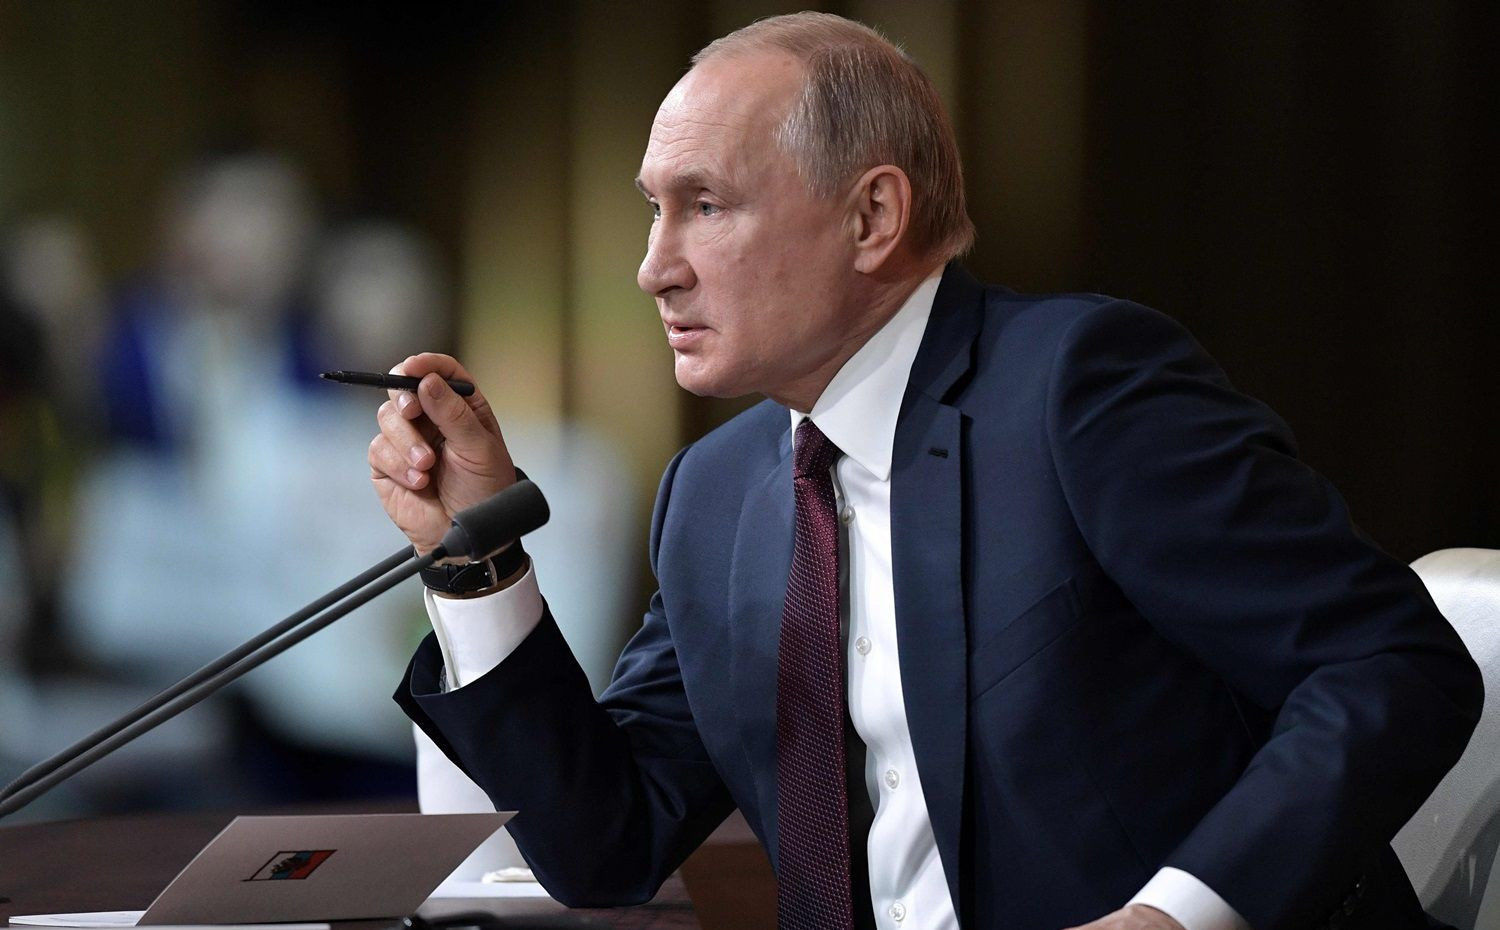 В окружении Путина новое подставное лицо: кого назначили "жителем" Ставрополя